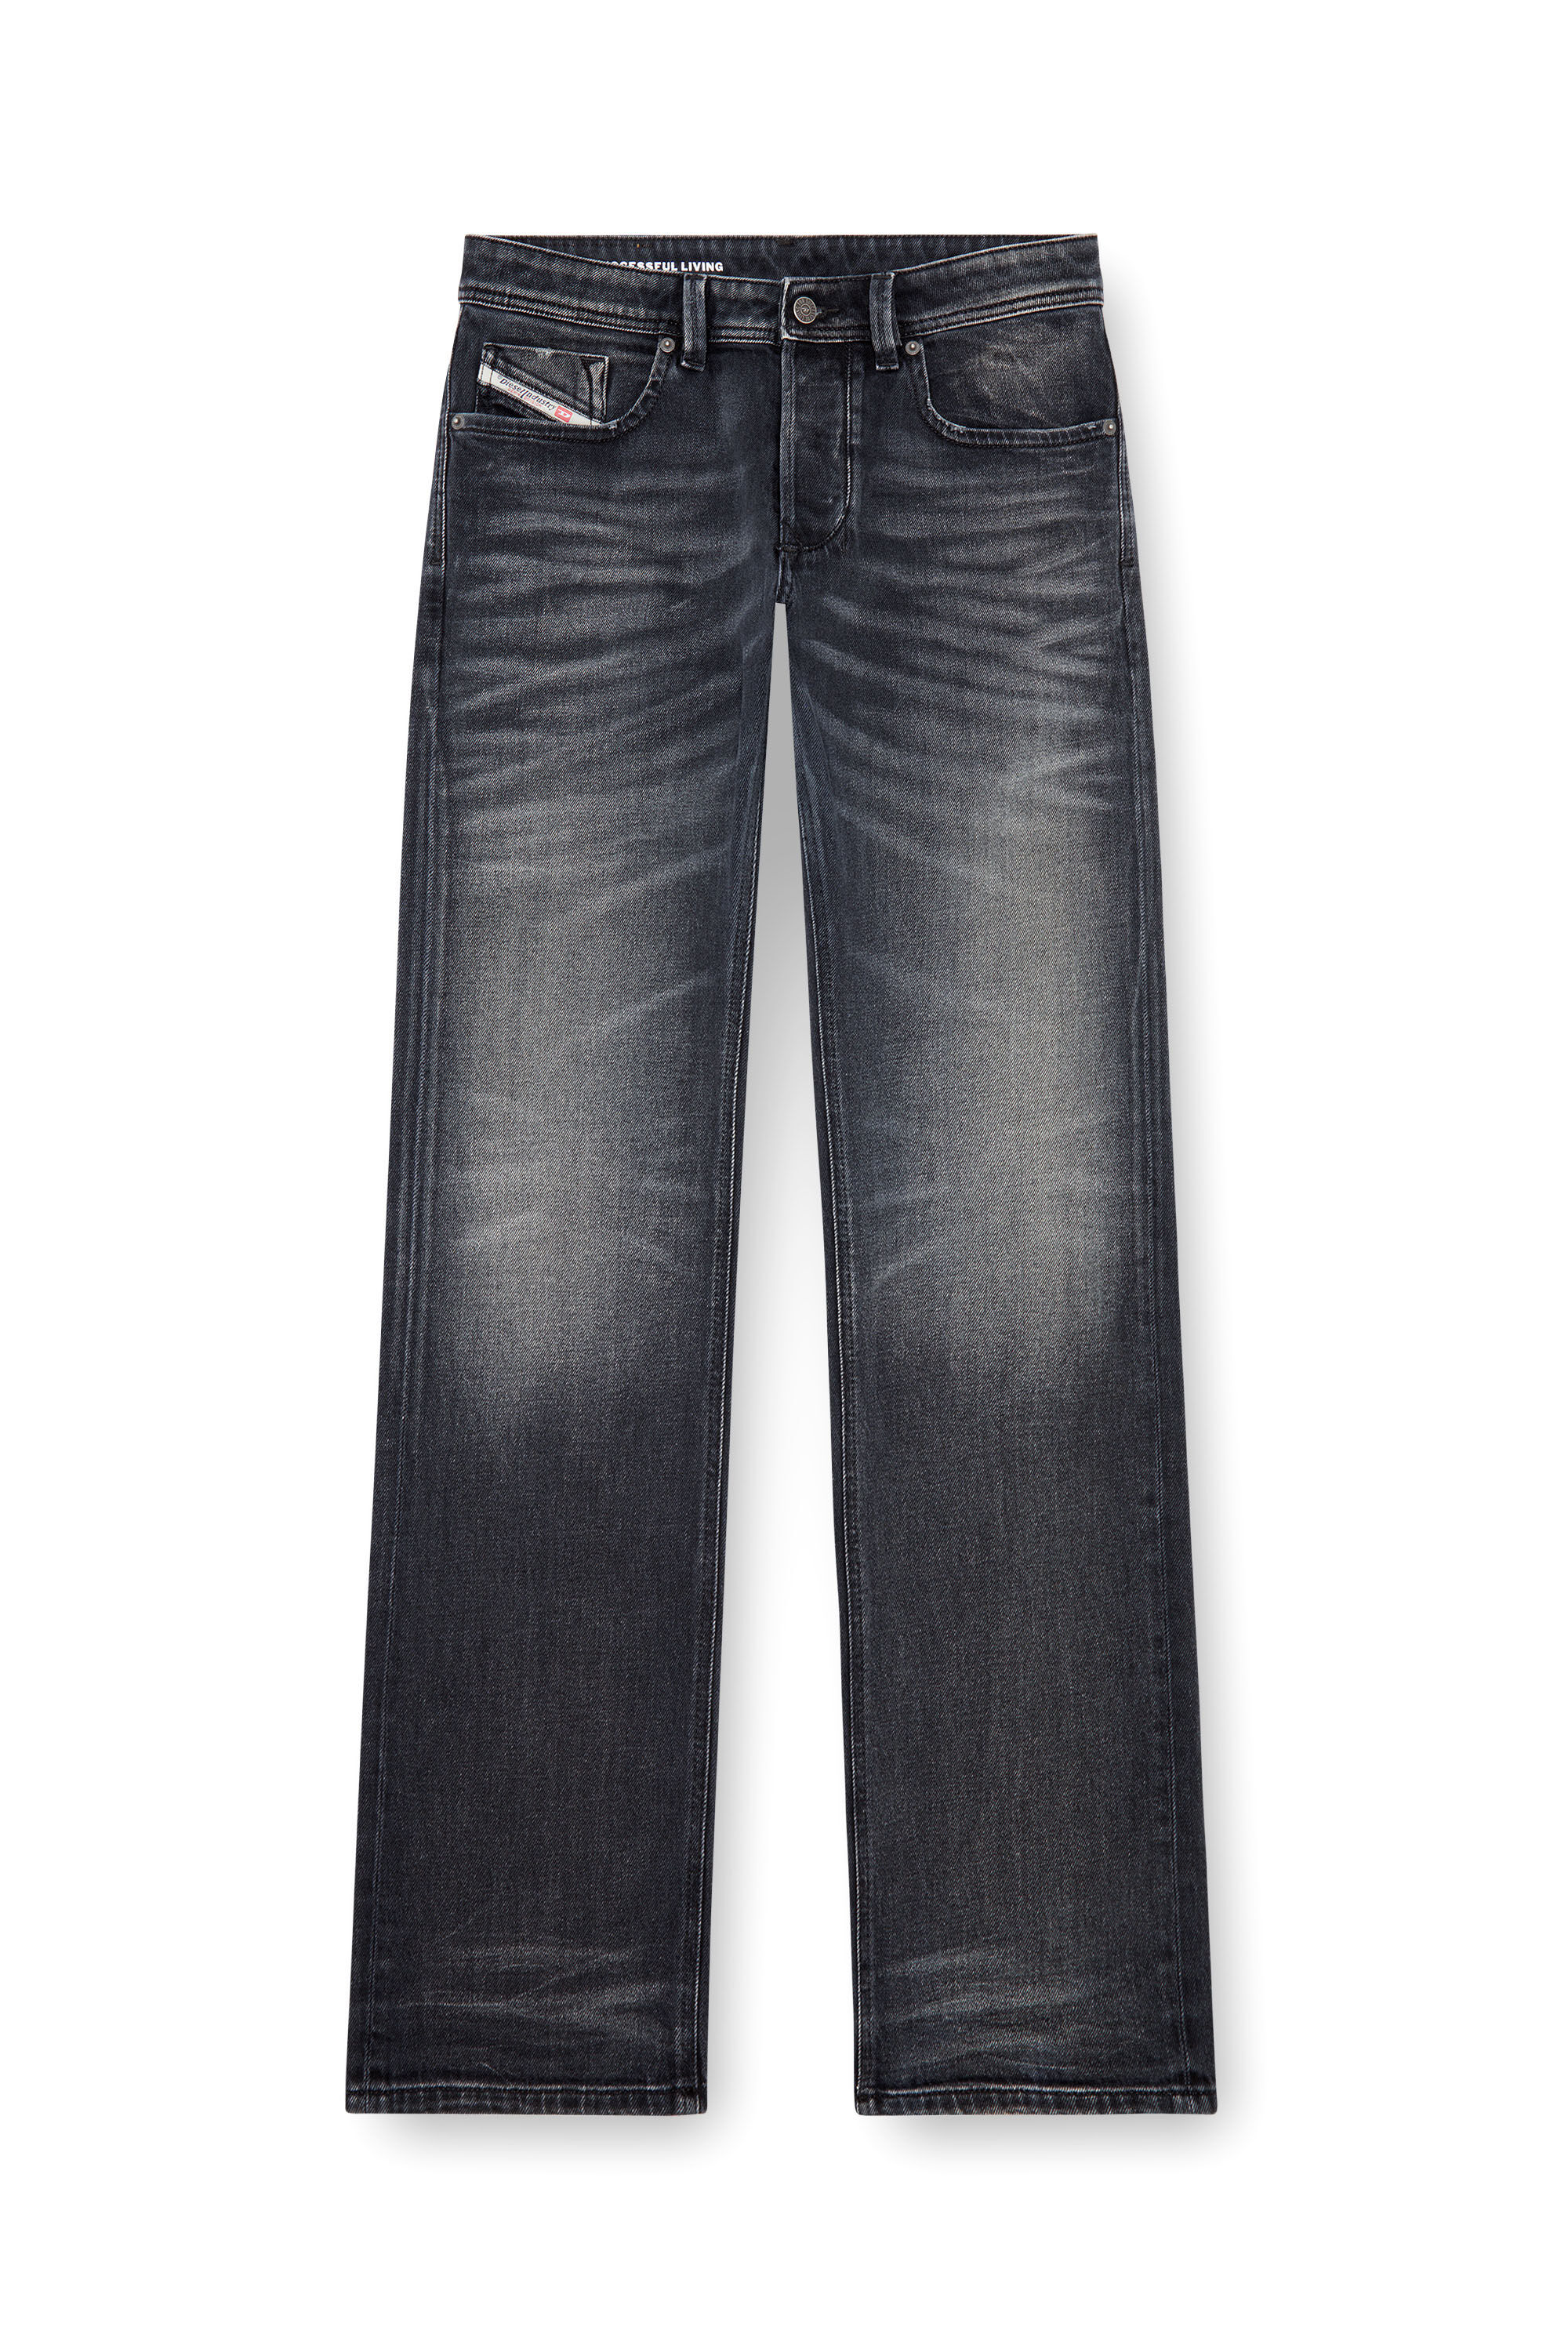 Diesel - Homme Straight Jeans 1985 Larkee 09J65, Noir/Gris foncé - Image 2